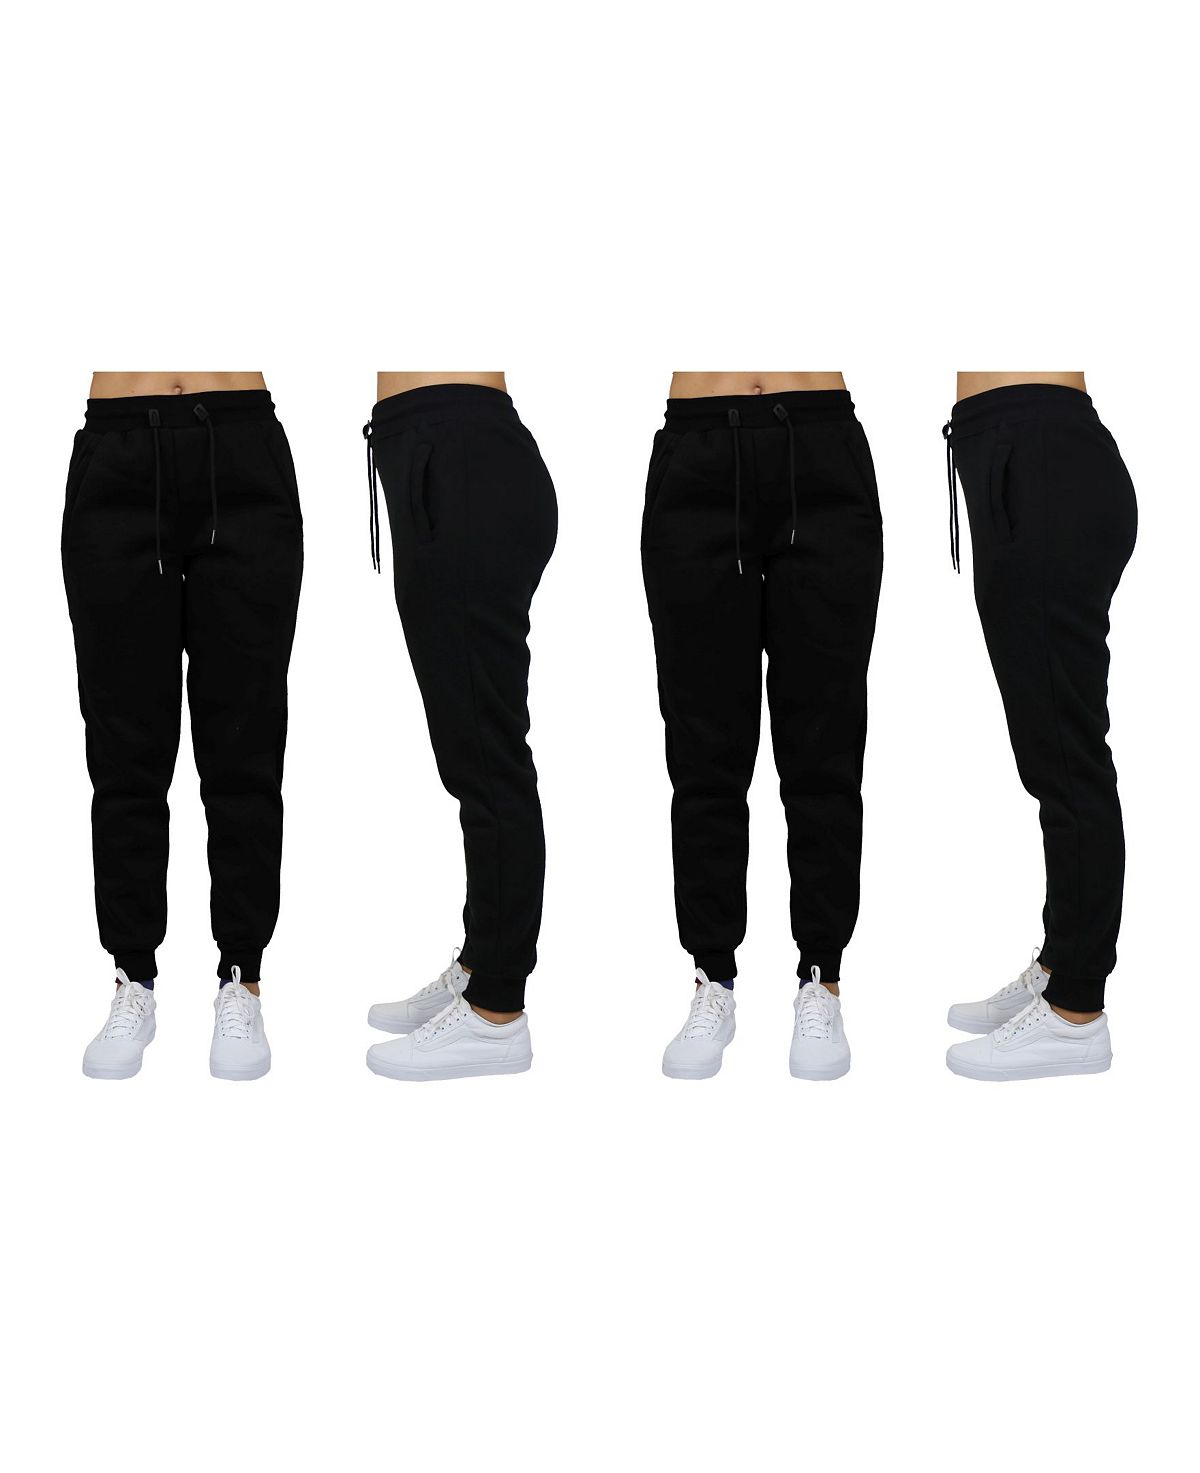 Женские спортивные штаны свободного кроя из флиса для бега, упаковка из 2 шт. Galaxy By Harvic, черный